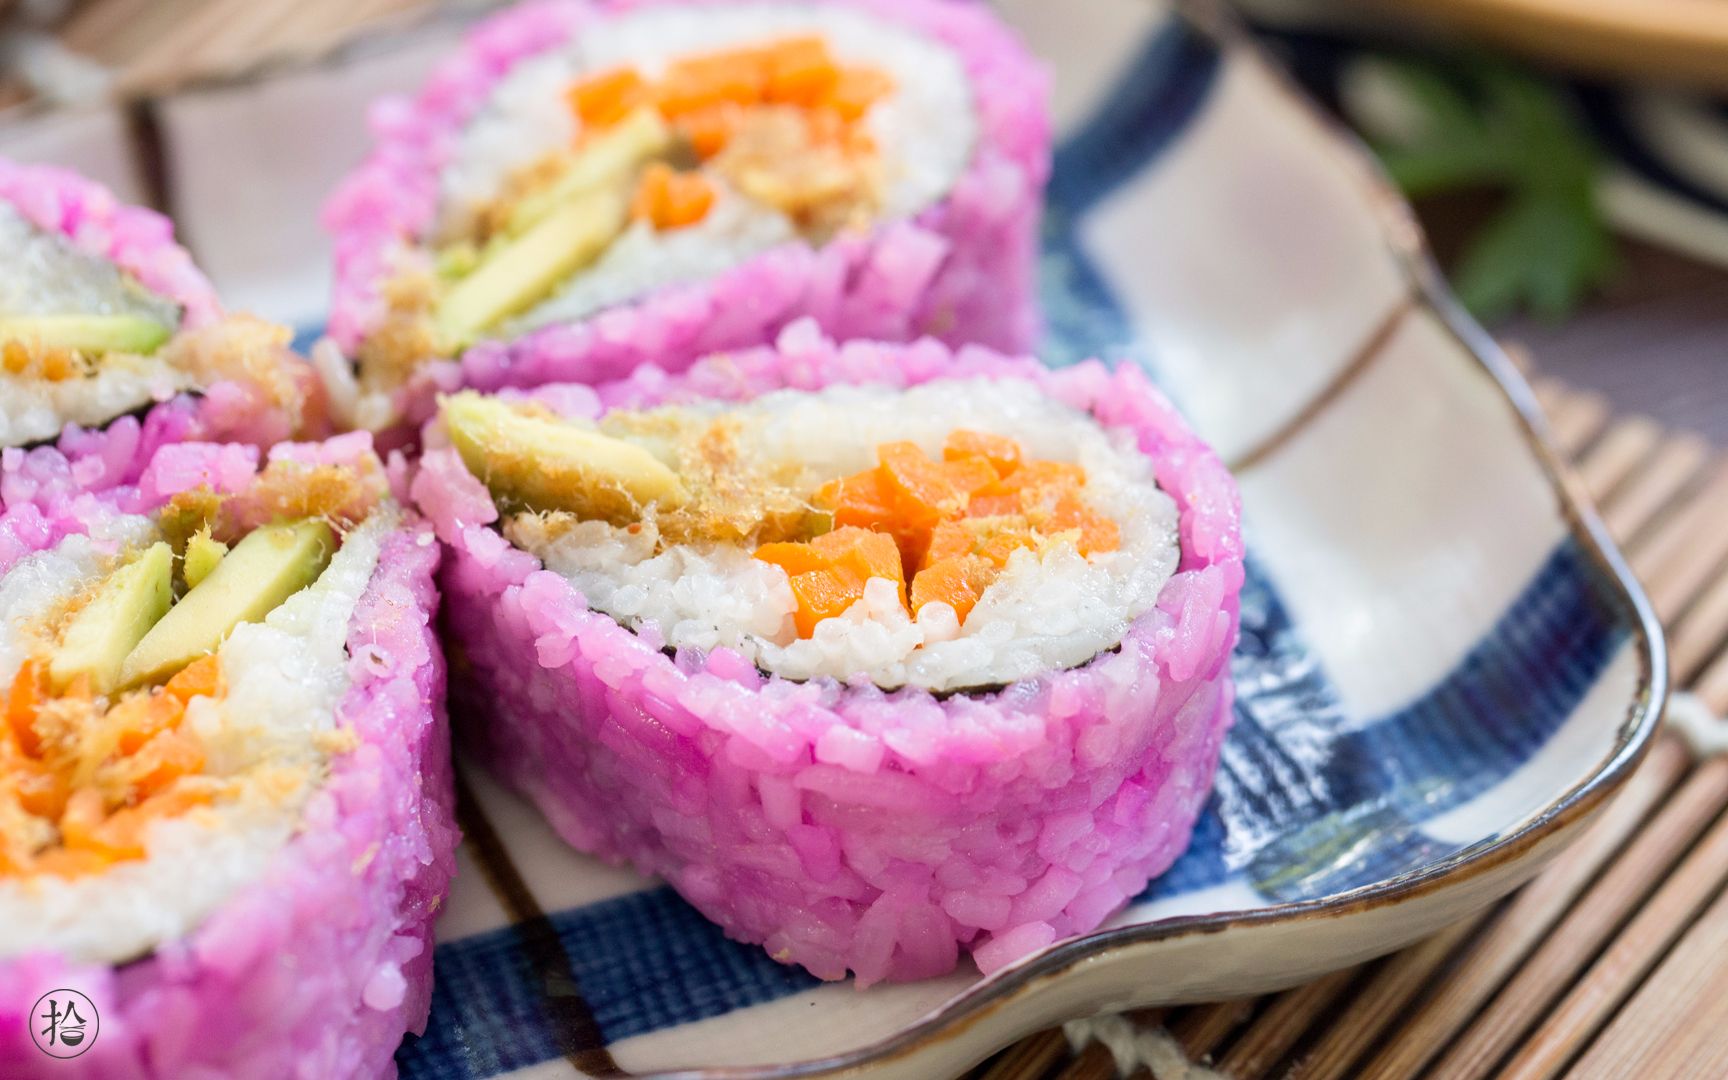 视觉和味觉的双重享受 花样寿司